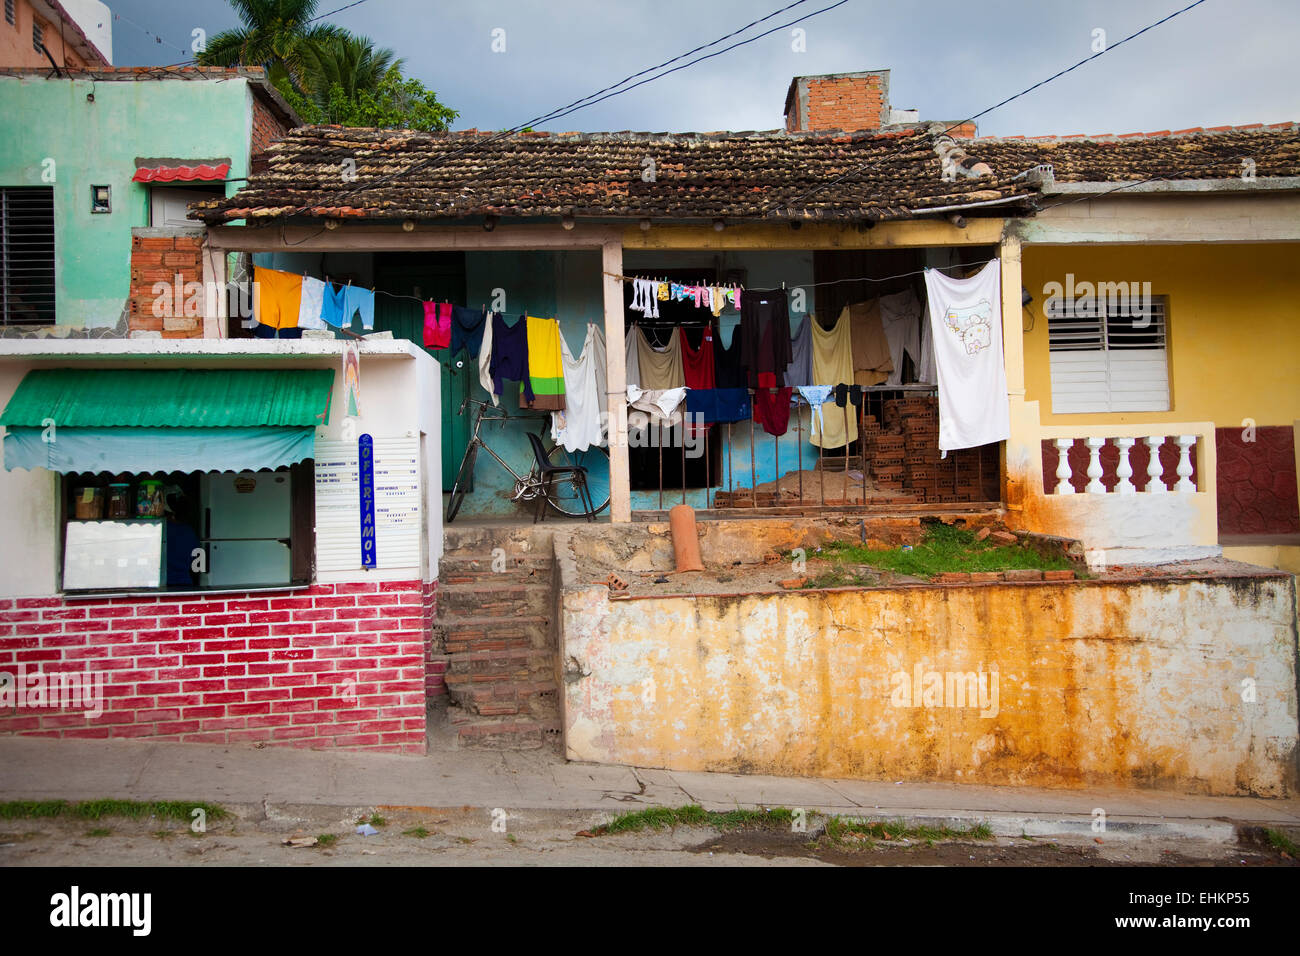 Alloggiamento affollato in una zona povera di Trinidad, Cuba Foto Stock